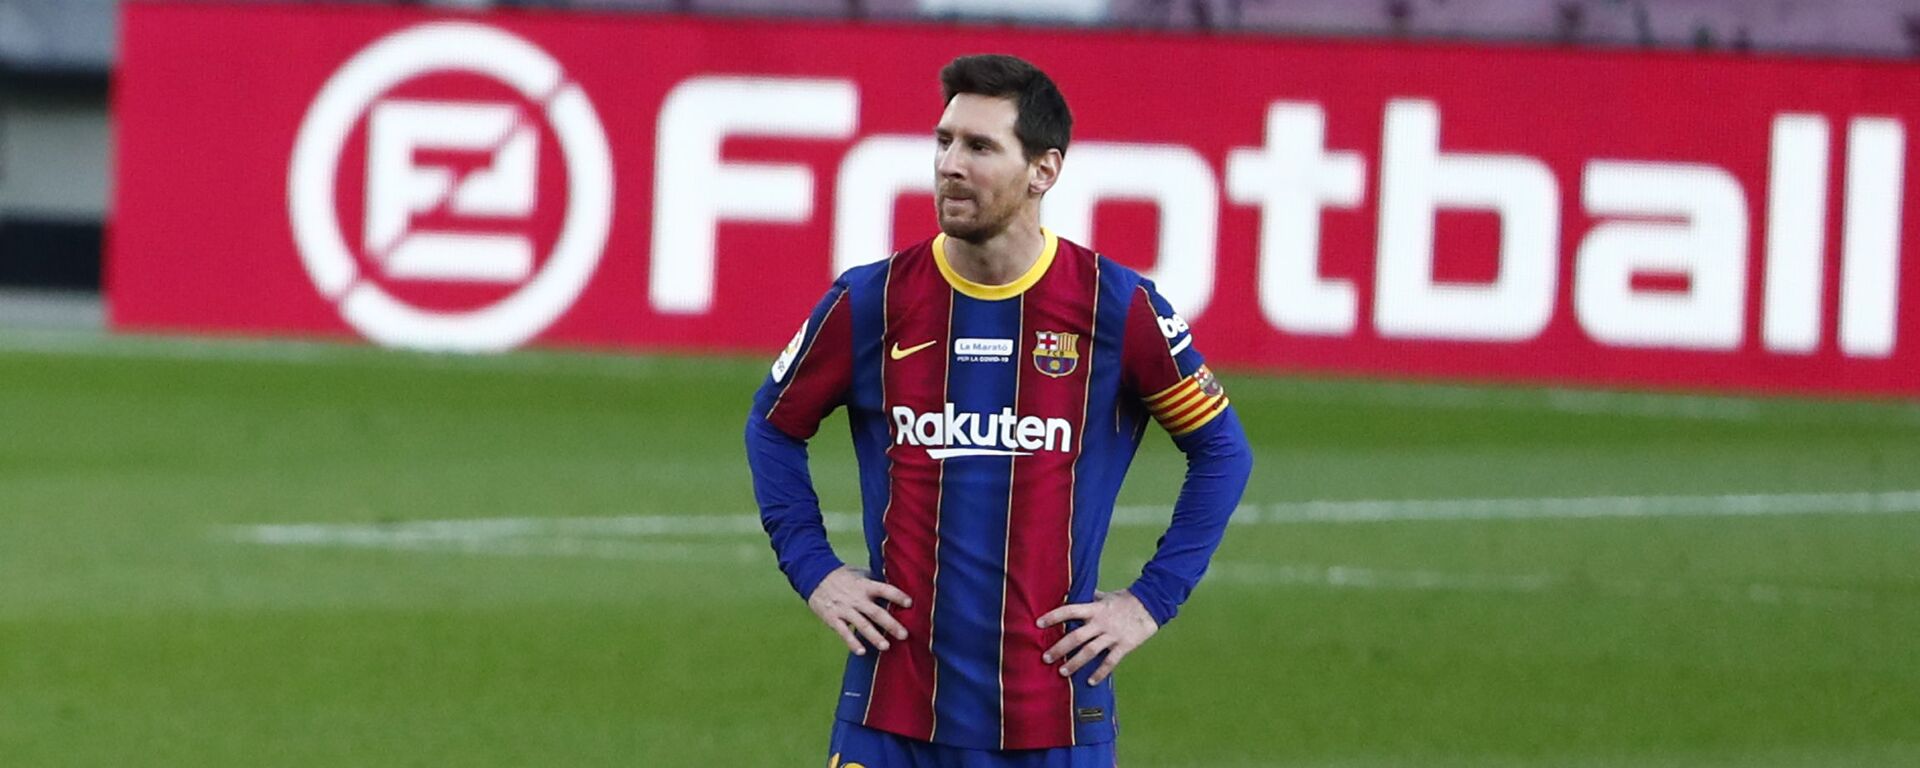 Leo Messi, futbolista argentino - اسپوتنیک افغانستان  , 1920, 06.02.2021